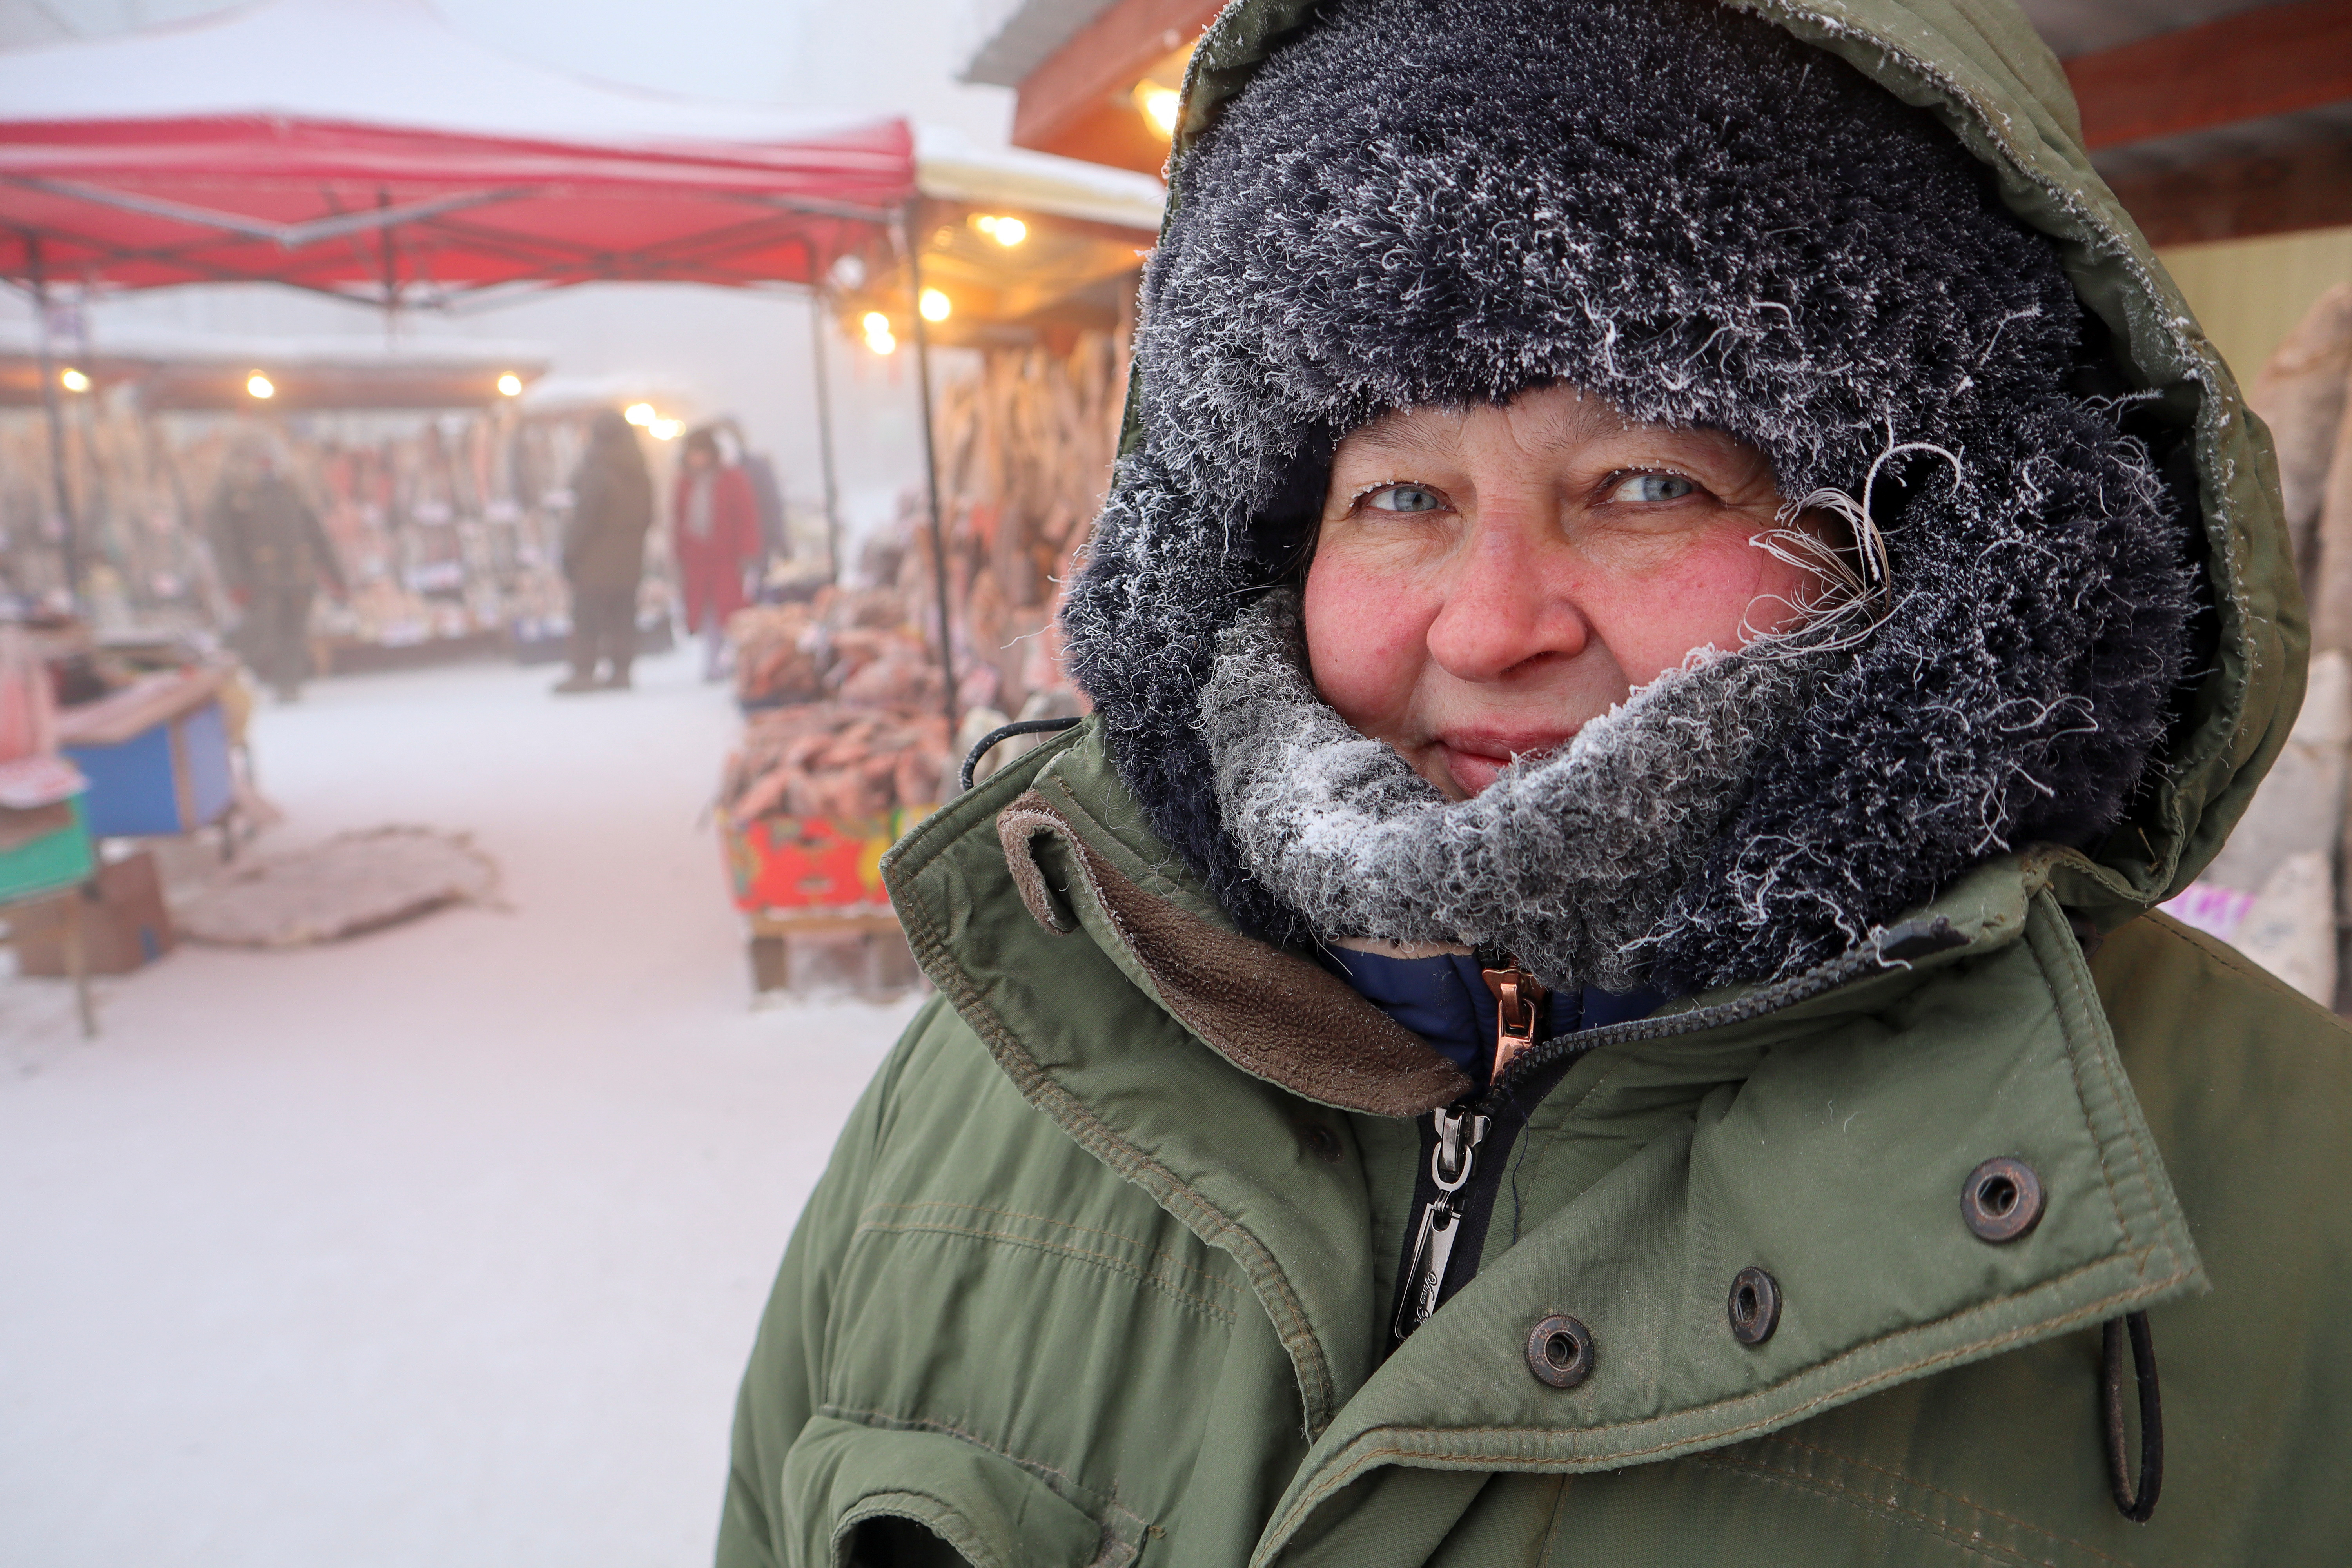 La vendedora Svetlana Belyayeva posa para una foto en un mercado al aire libre en un día gélido en Yakutsk, Rusia, este 15 de enero de 2023 (Reuters)